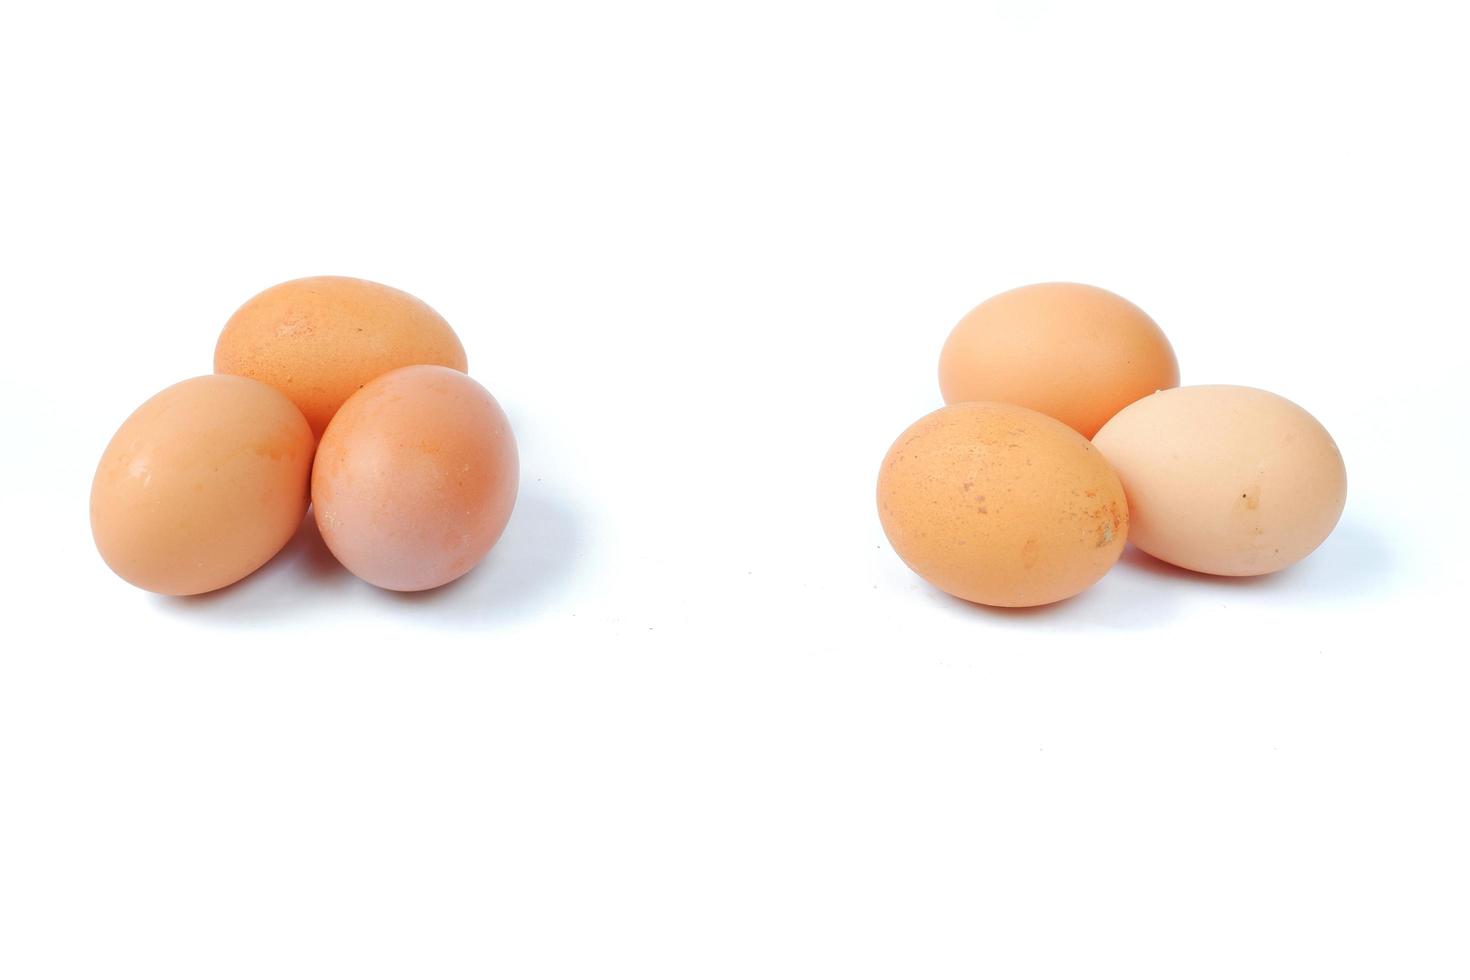 ovos de galinha isolados em um fundo branco foto